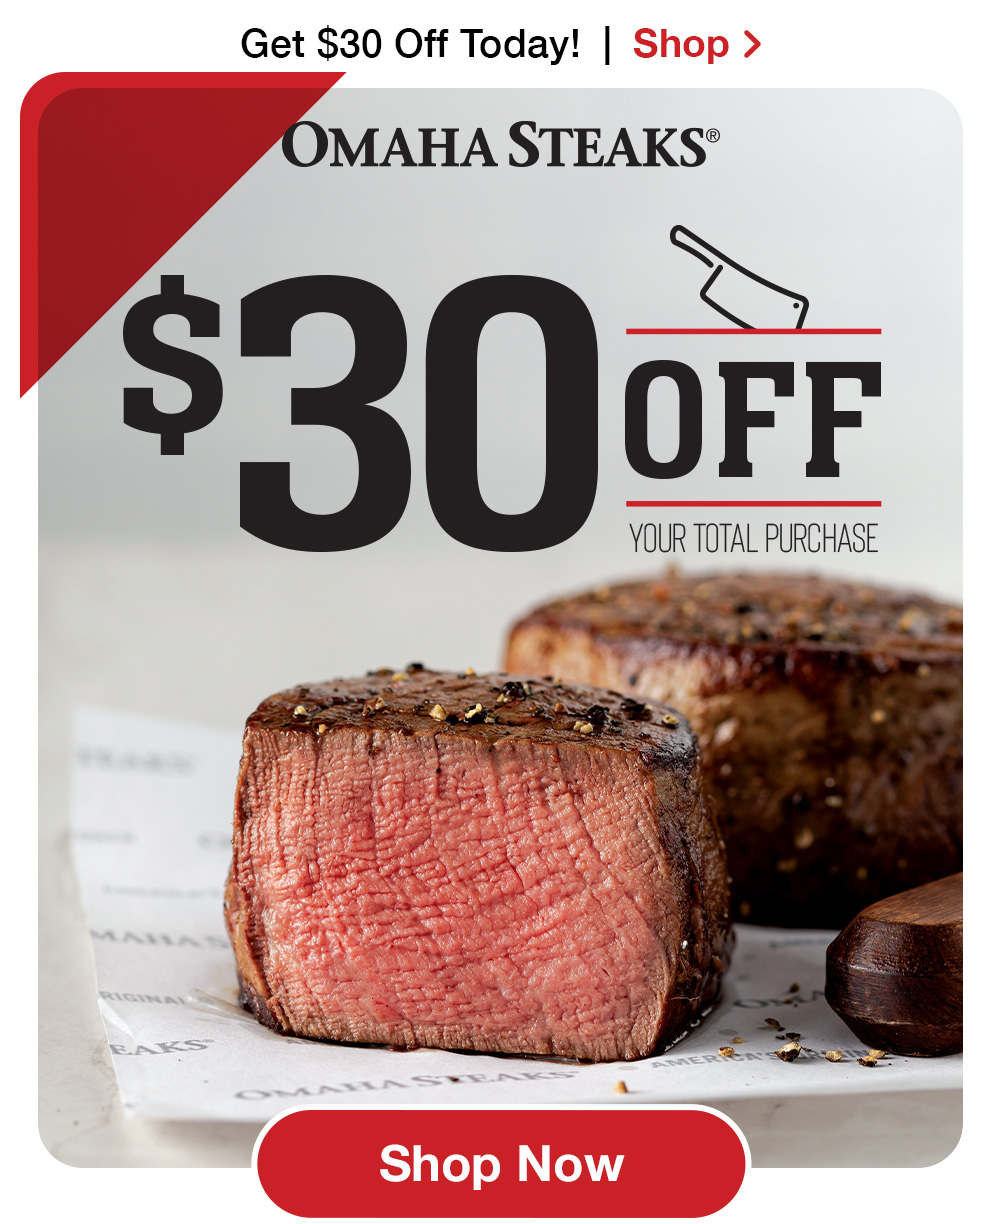 Ending soon! Claim your $30 Reward Card now. - Omaha Steaks